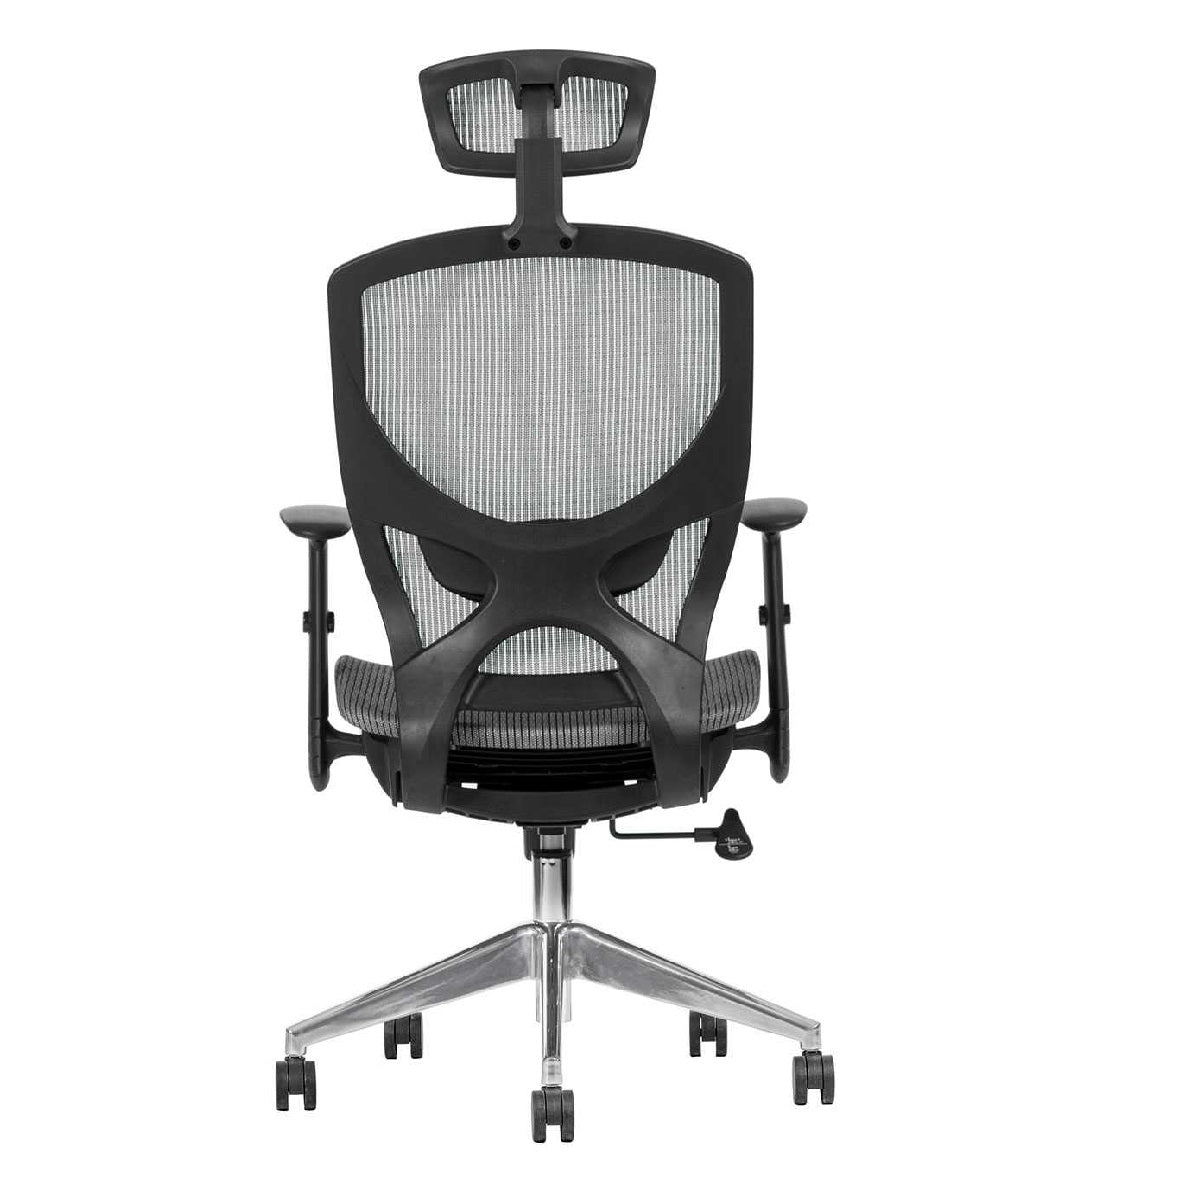 Sillón ejecutivo Matrix respaldo alto y asiento tapizado en mesh con base aluminio